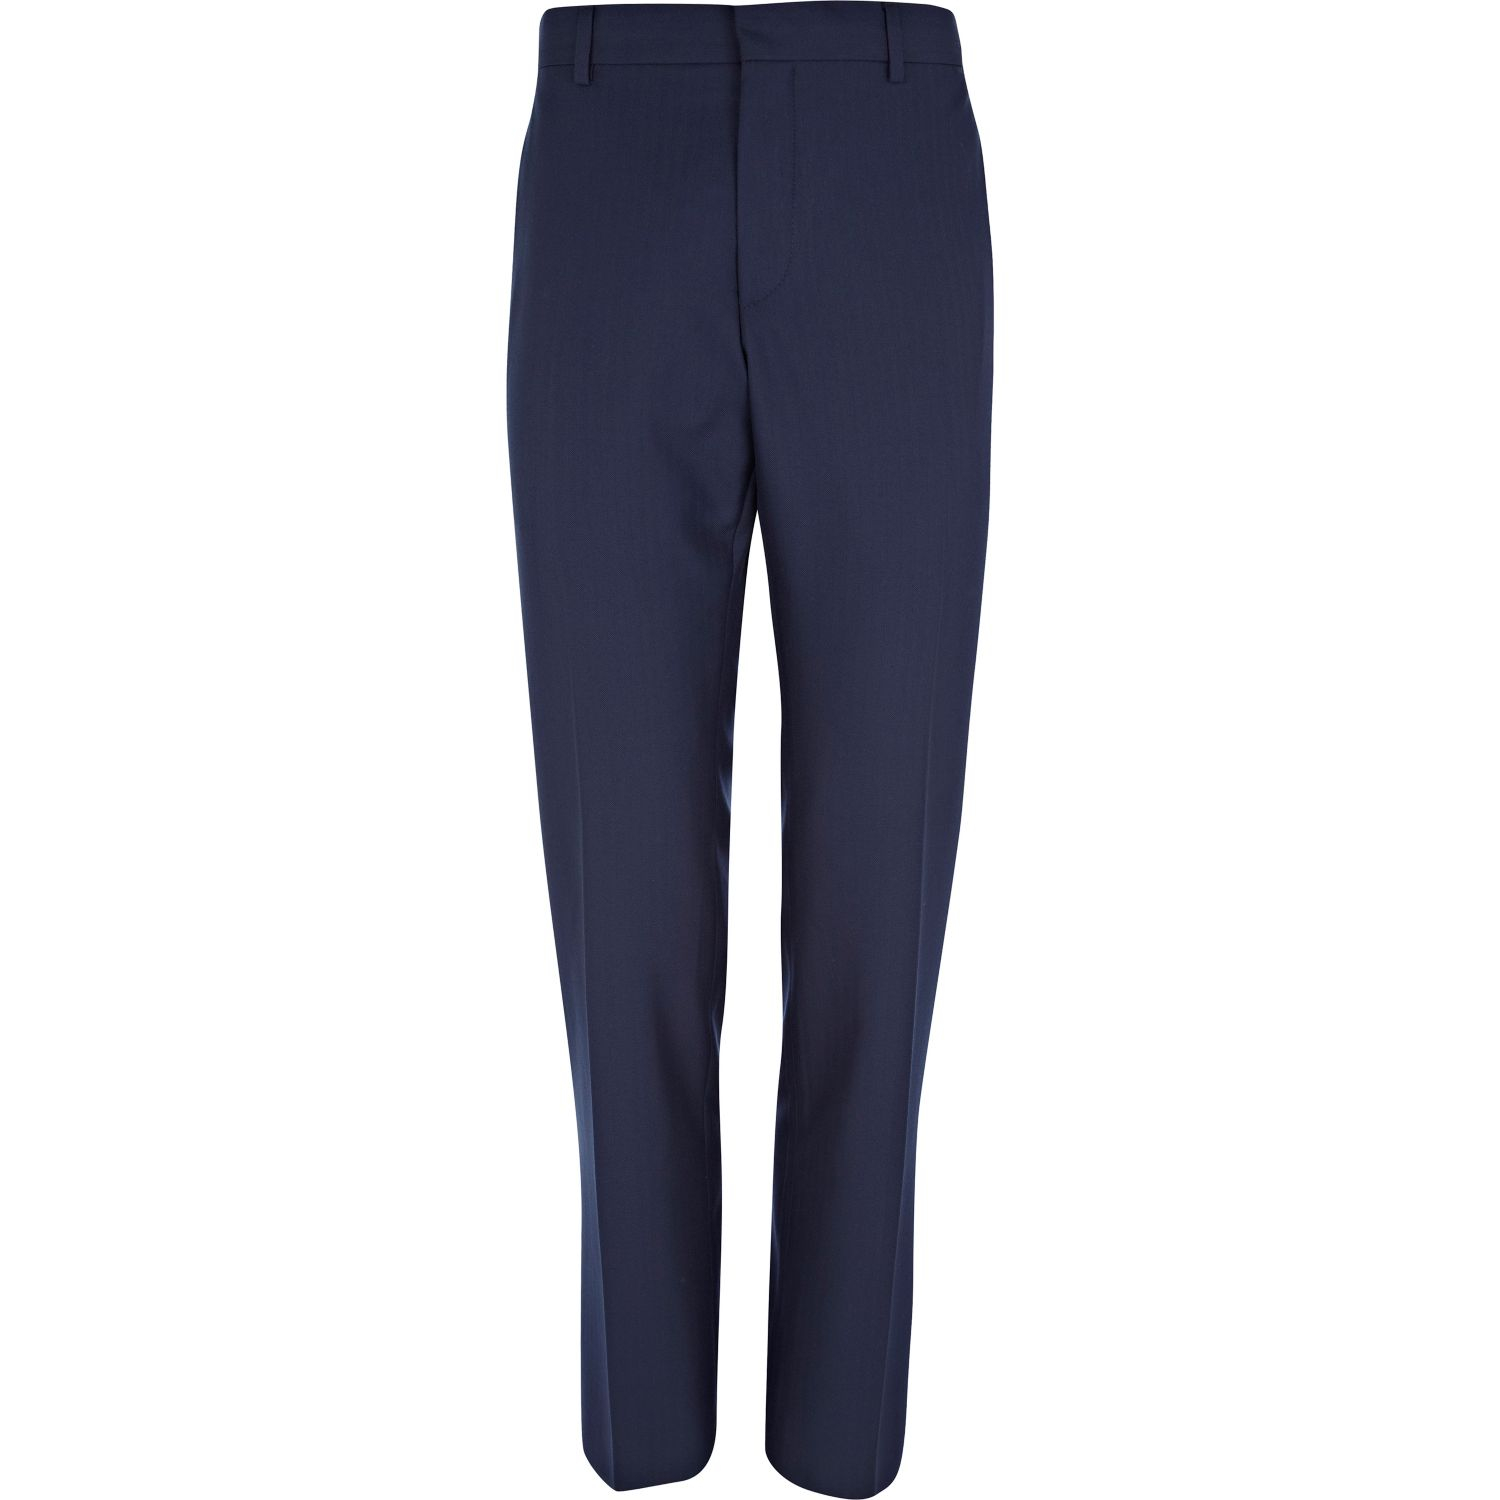 Lyst - River Island Navy Blue Herringbone Slim Suit Pants in Blue for Men